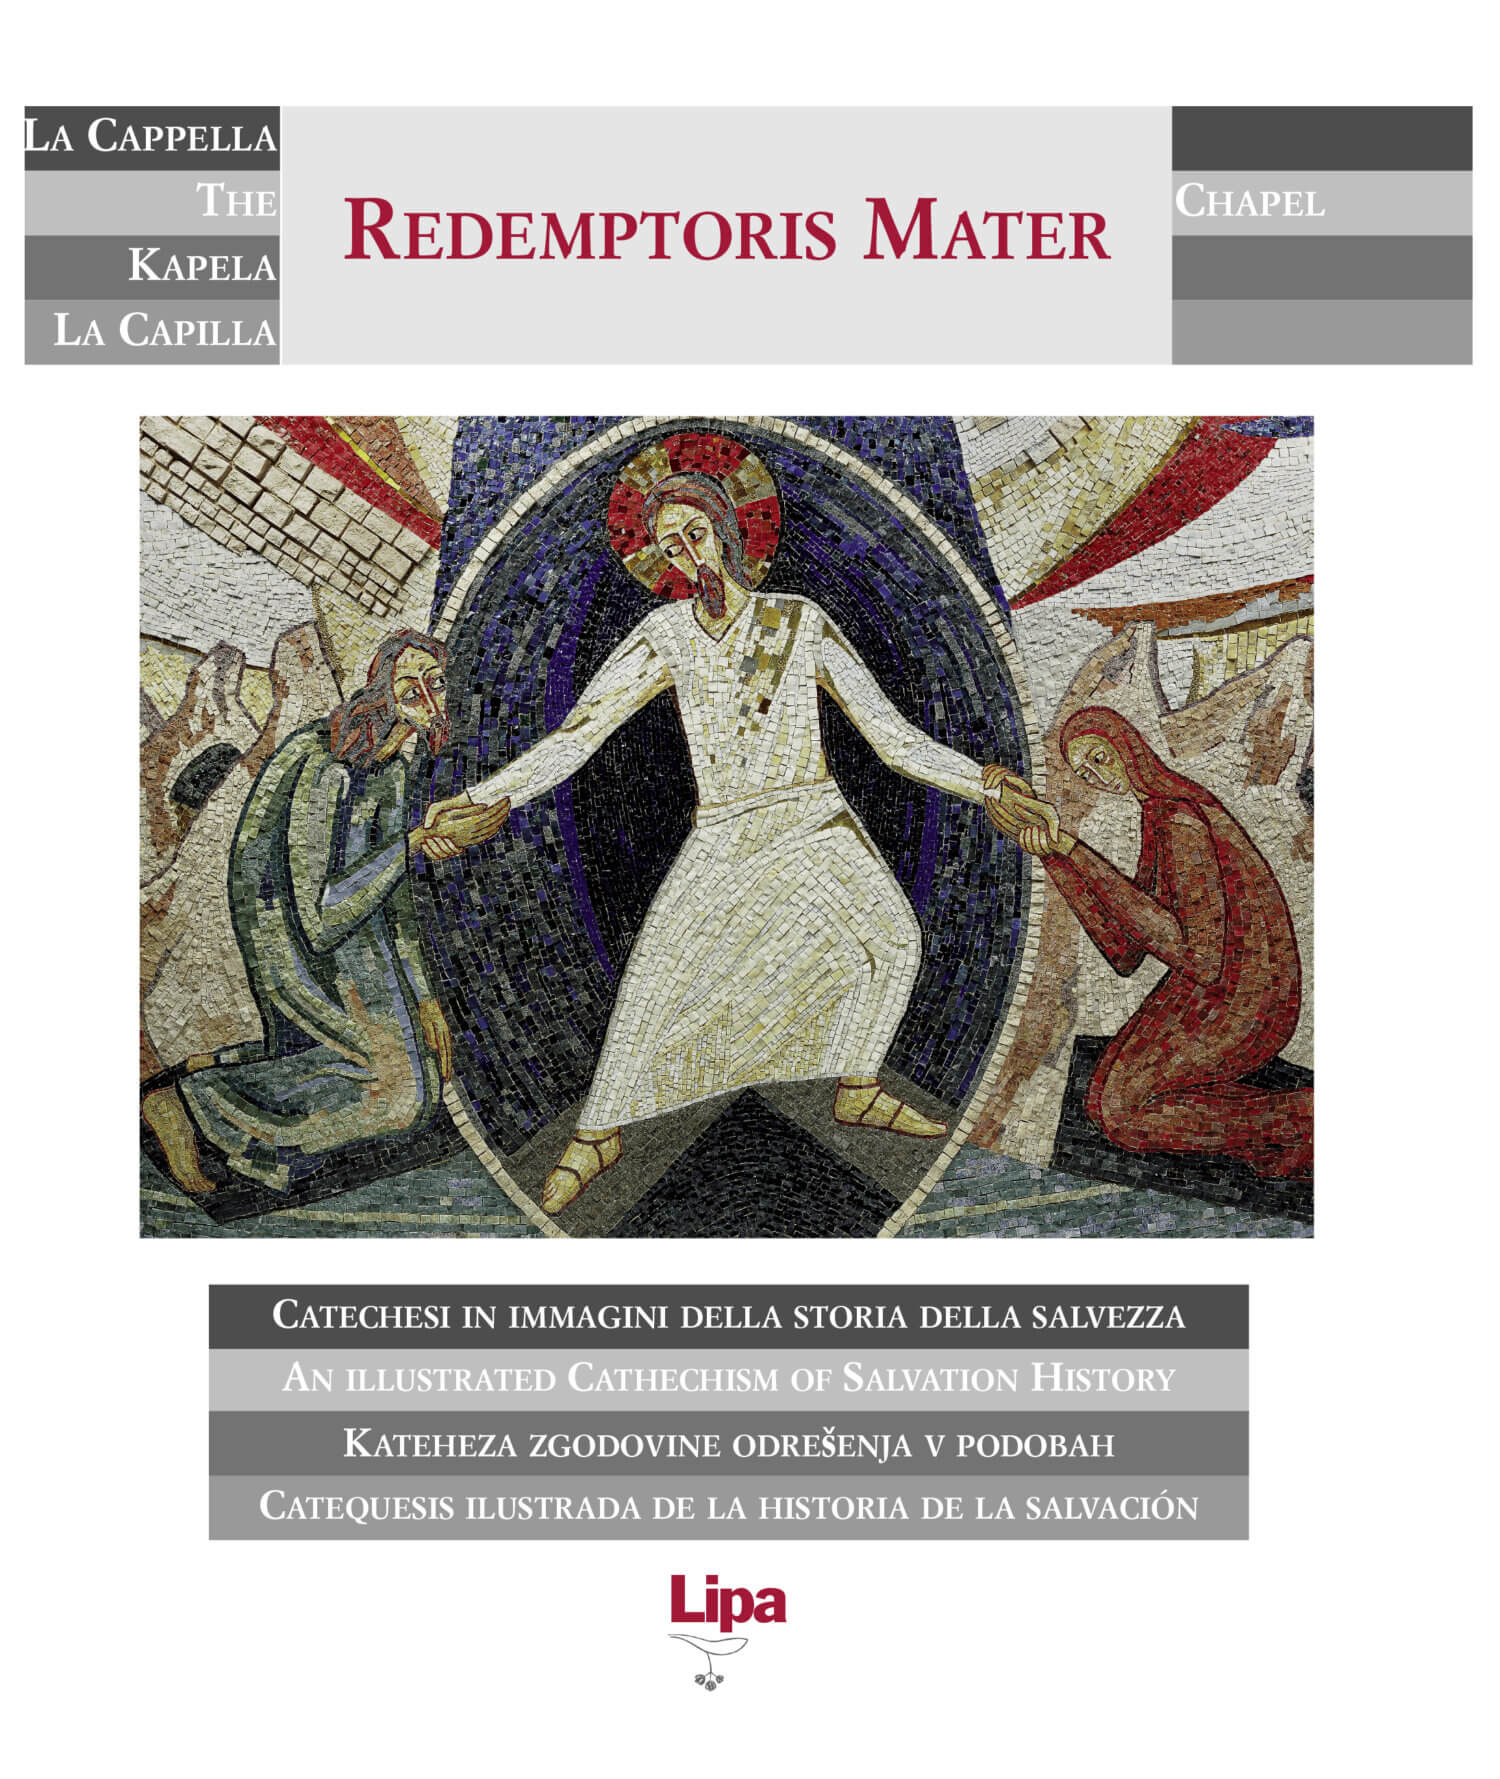 Copertina del diapoalbum di diapositive "La cappella Redemptoris Mater" realizzato dall'Atelier d'arte del Centro Aletti di padre Marko Ivan Rupnik